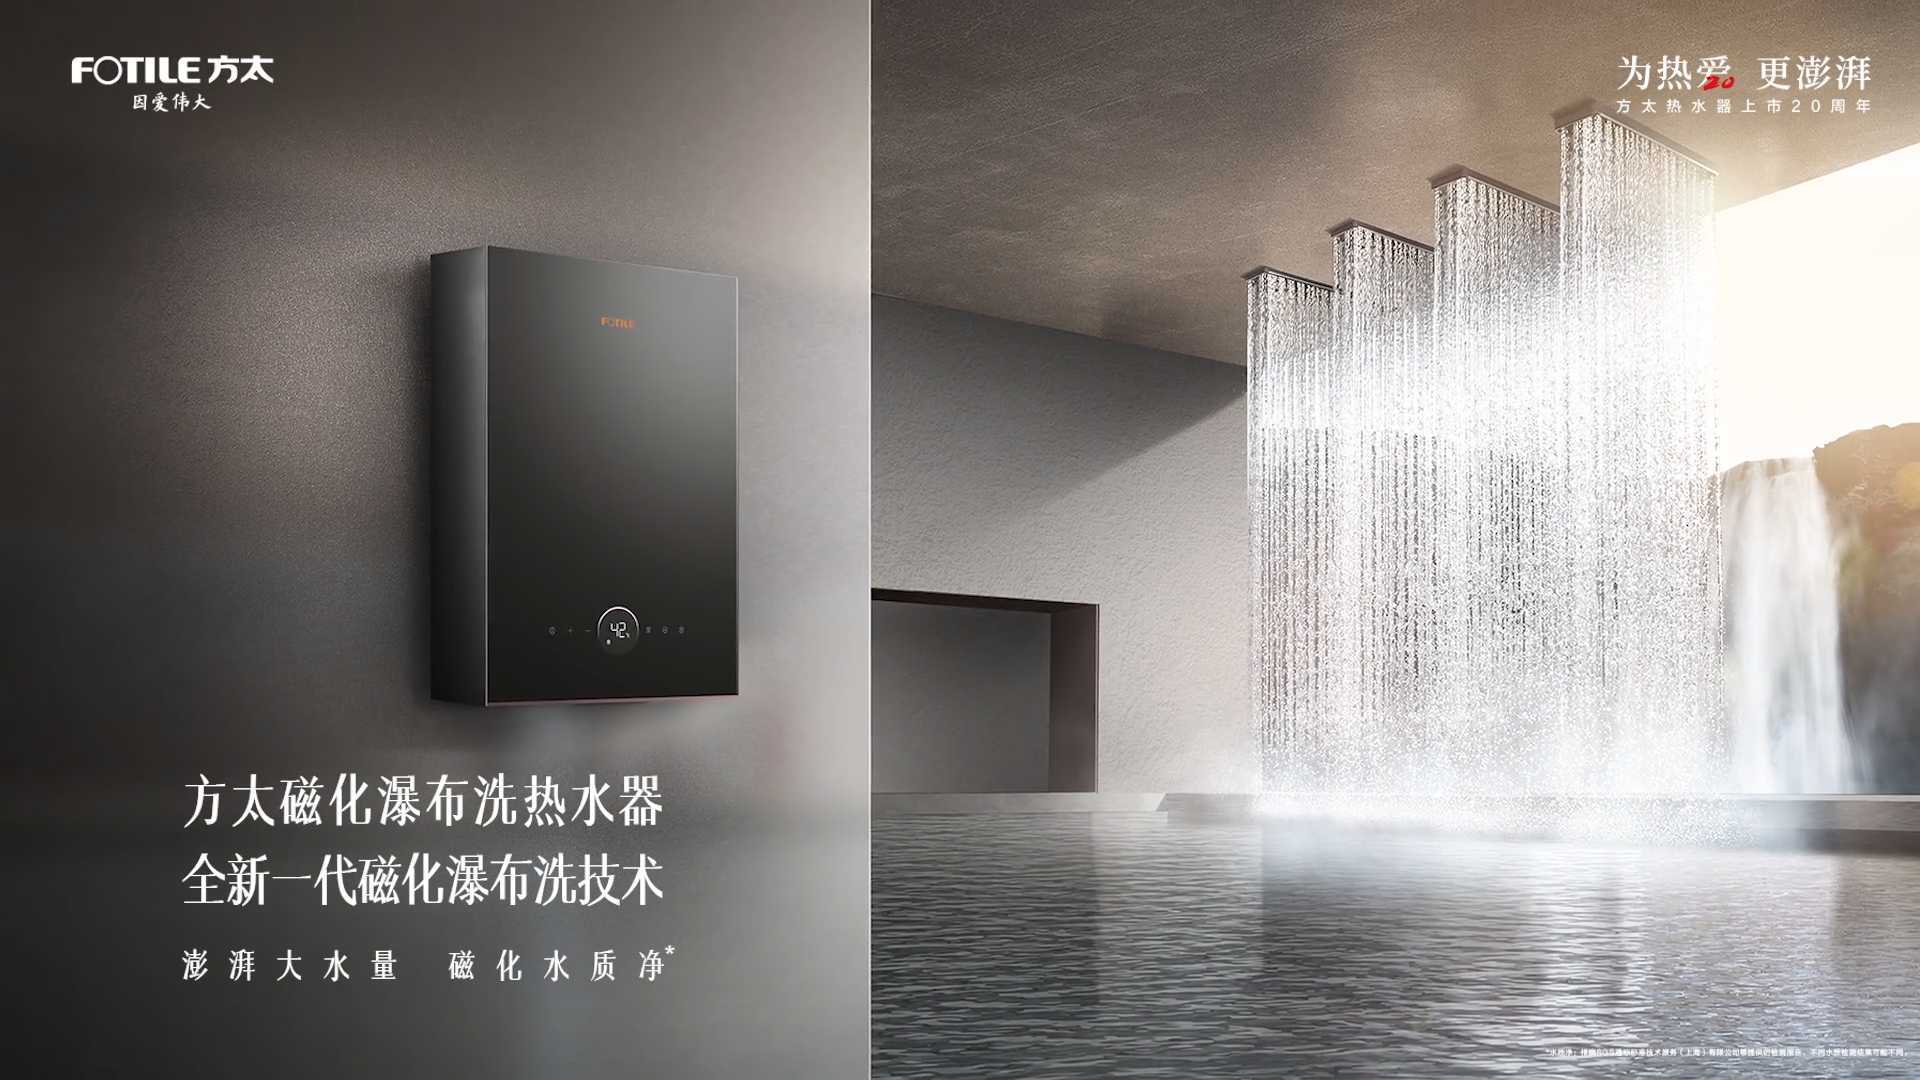 #方太磁化瀑布洗热水器 全系列新品澎湃上市